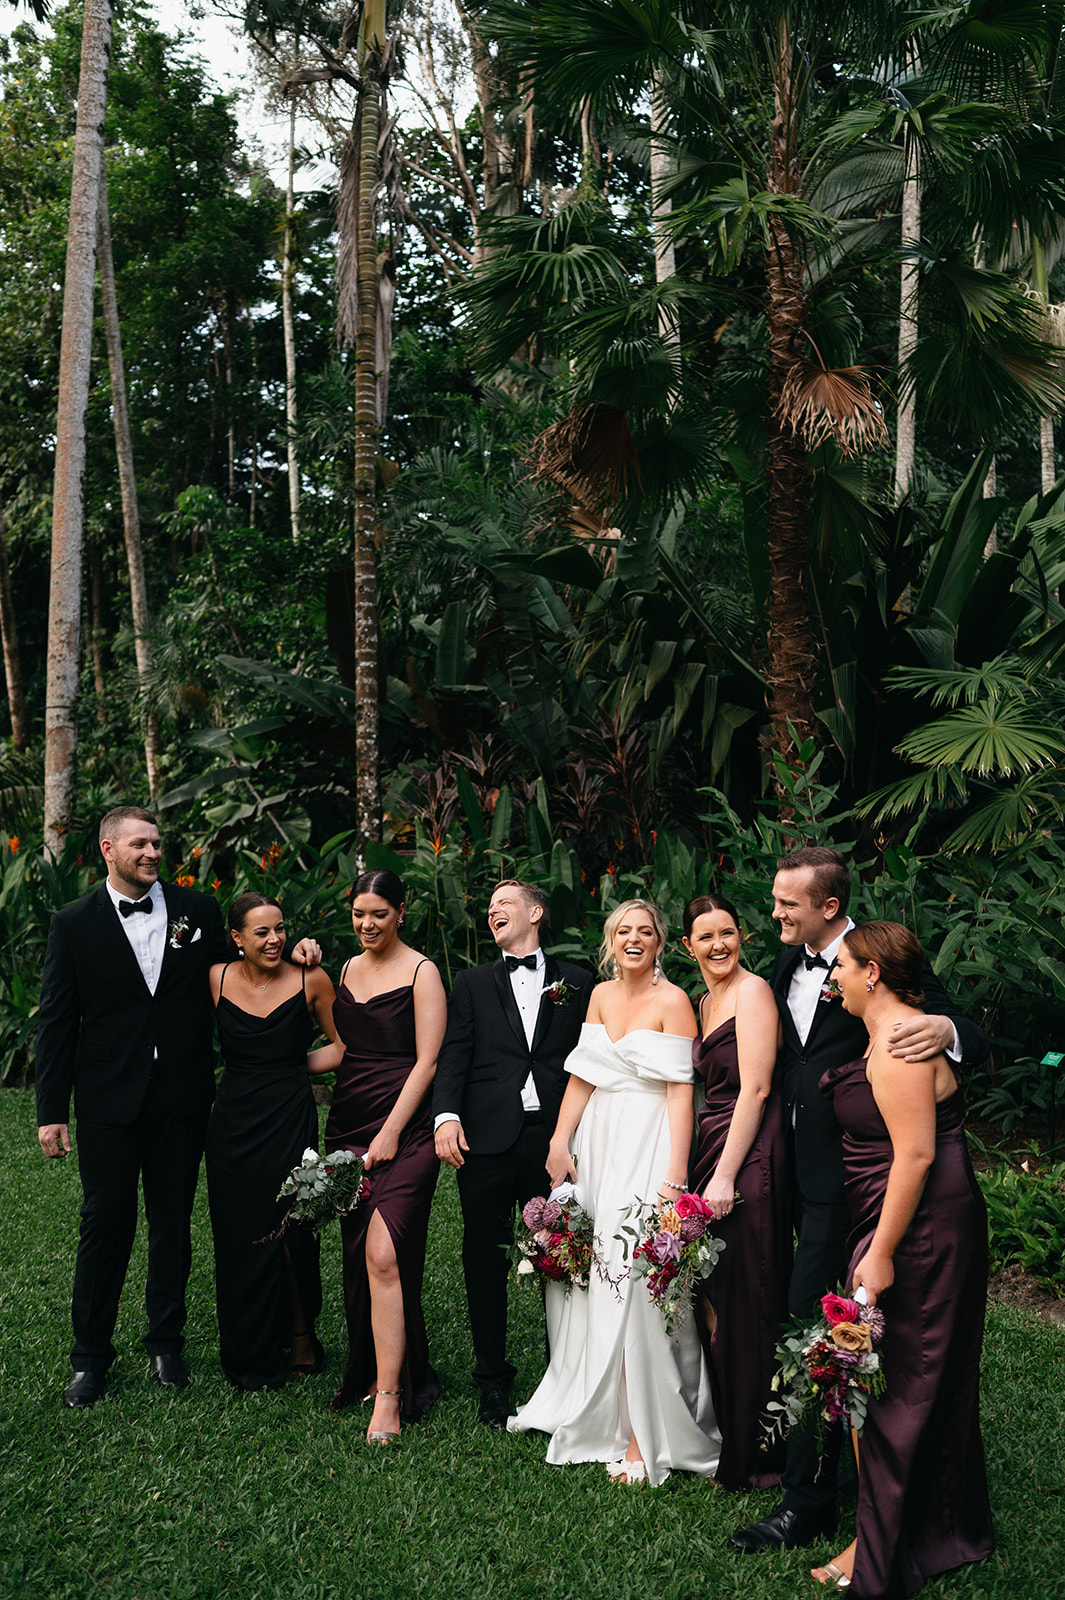 Bridal party photos in the Cairns Botanical Garden